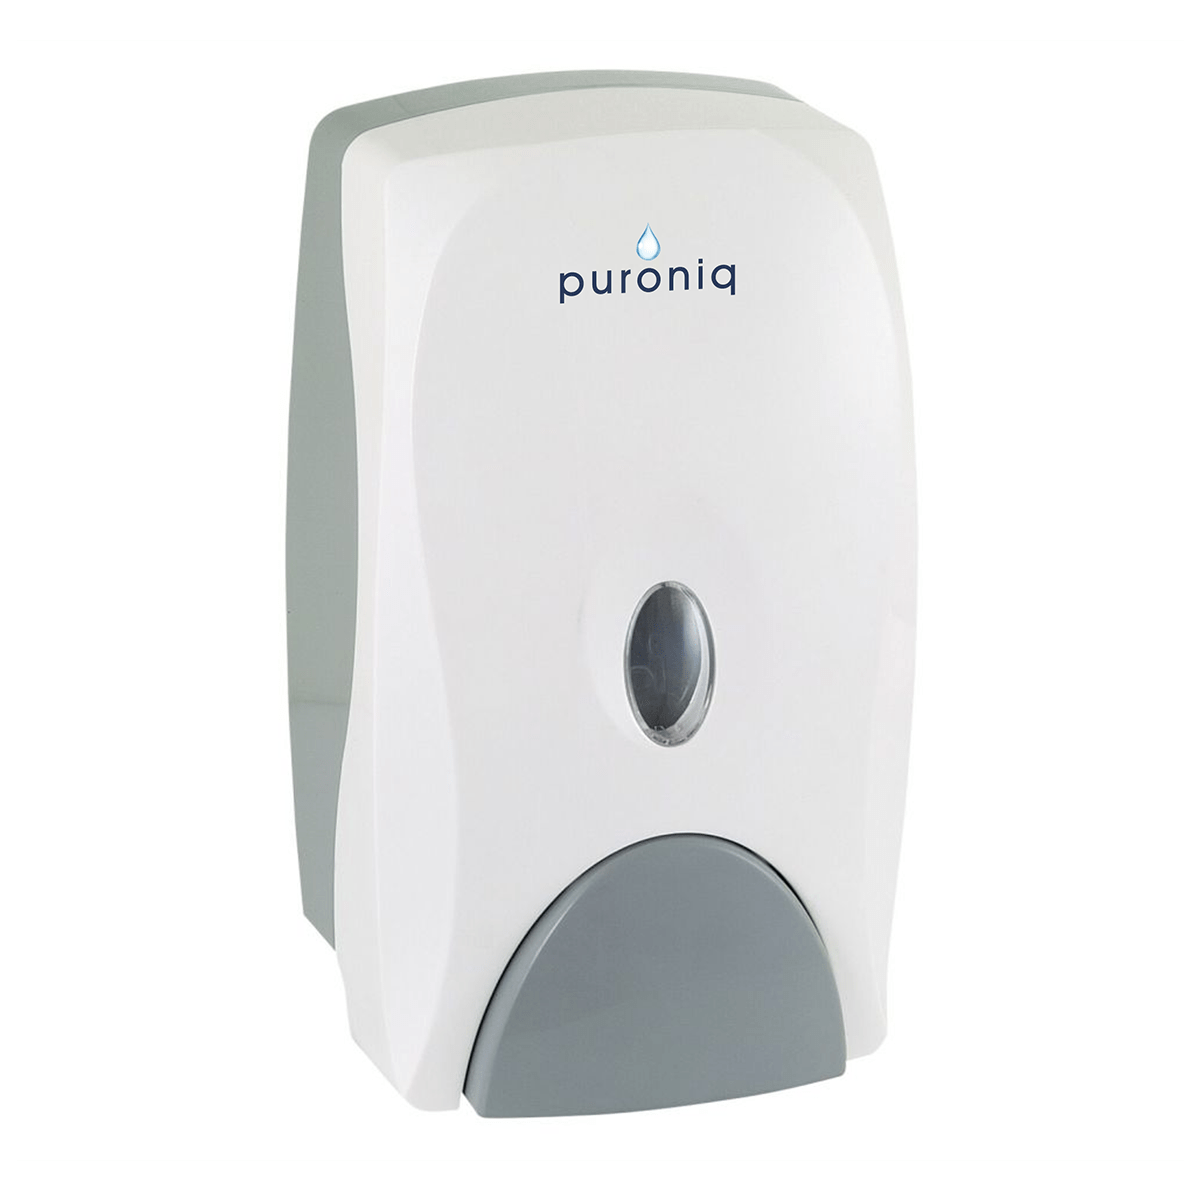 Hand Sanitizer Dispenser Puroniq 